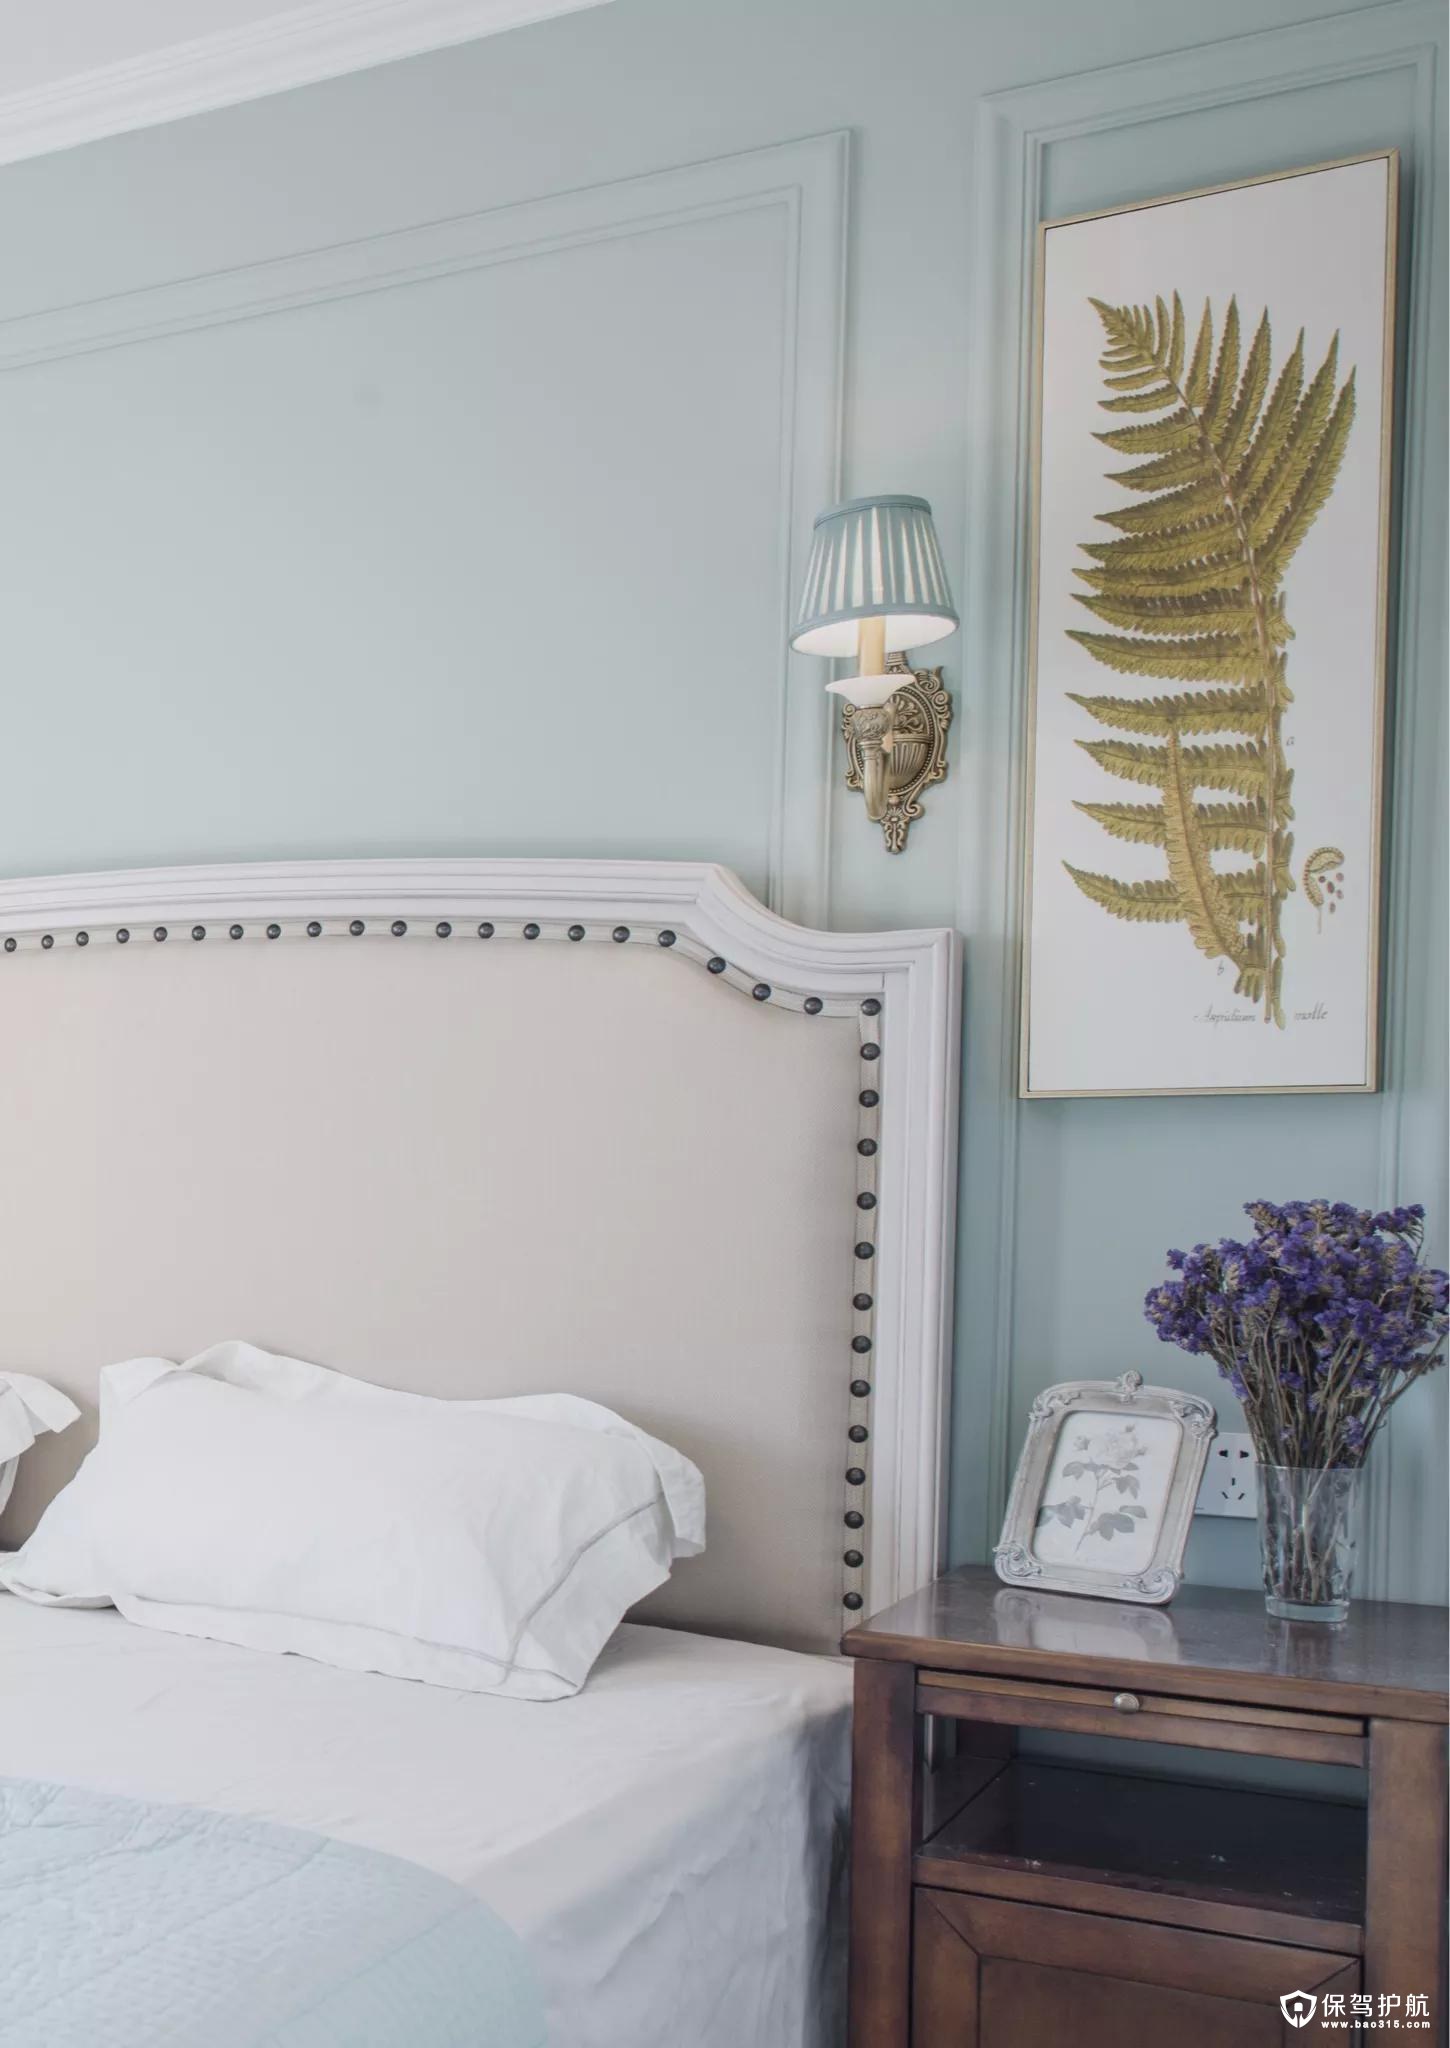 卧室的美式布衣床头靠垫，在清新的淡蓝色背景墙+线条边框，还有一旁的蕨类装饰画的衬托，整体给人以优雅温馨的气息。